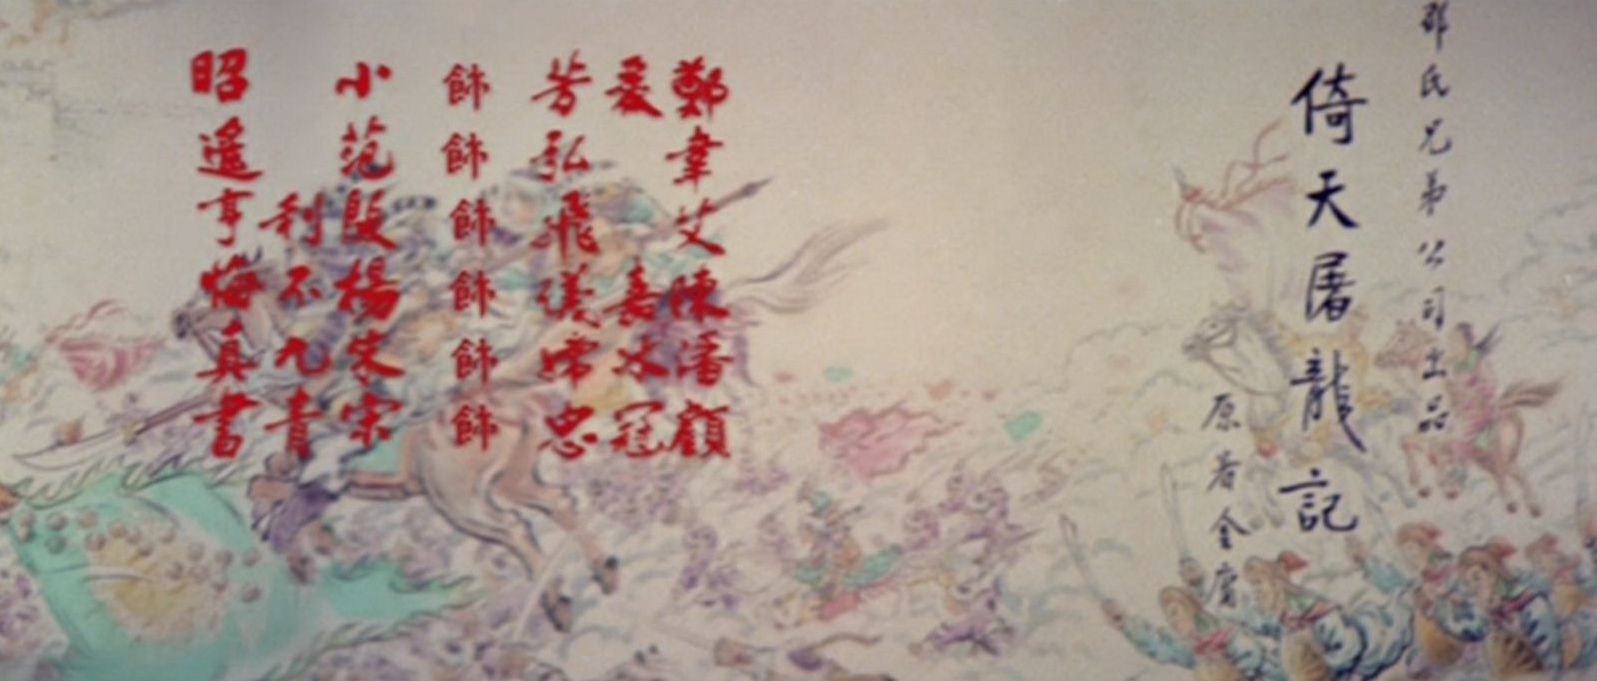 Heaven Sword and Dragon Sabre 2 (1978) Screenshot 3